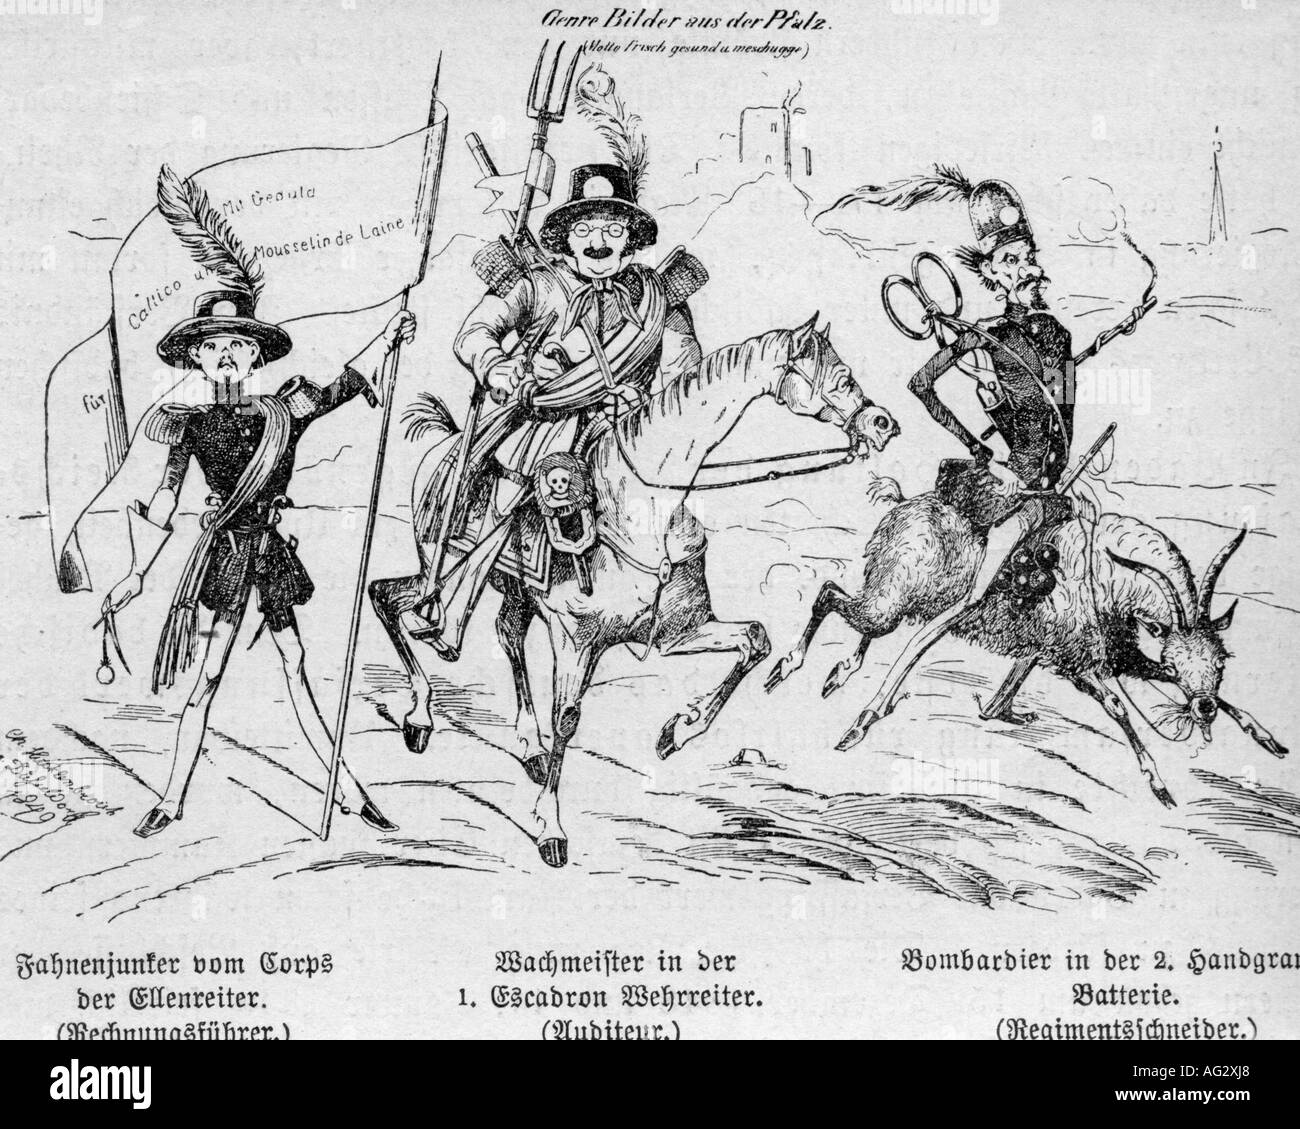 Militär, Karikatur, "Genrebilder aus der Pfalz" ("Genrebilder aus dem Palatin"), 1849, Zeichnung von Hocklenbroich, Revolution 1848, Deutschland, 19. Jahrhundert, Stockfoto